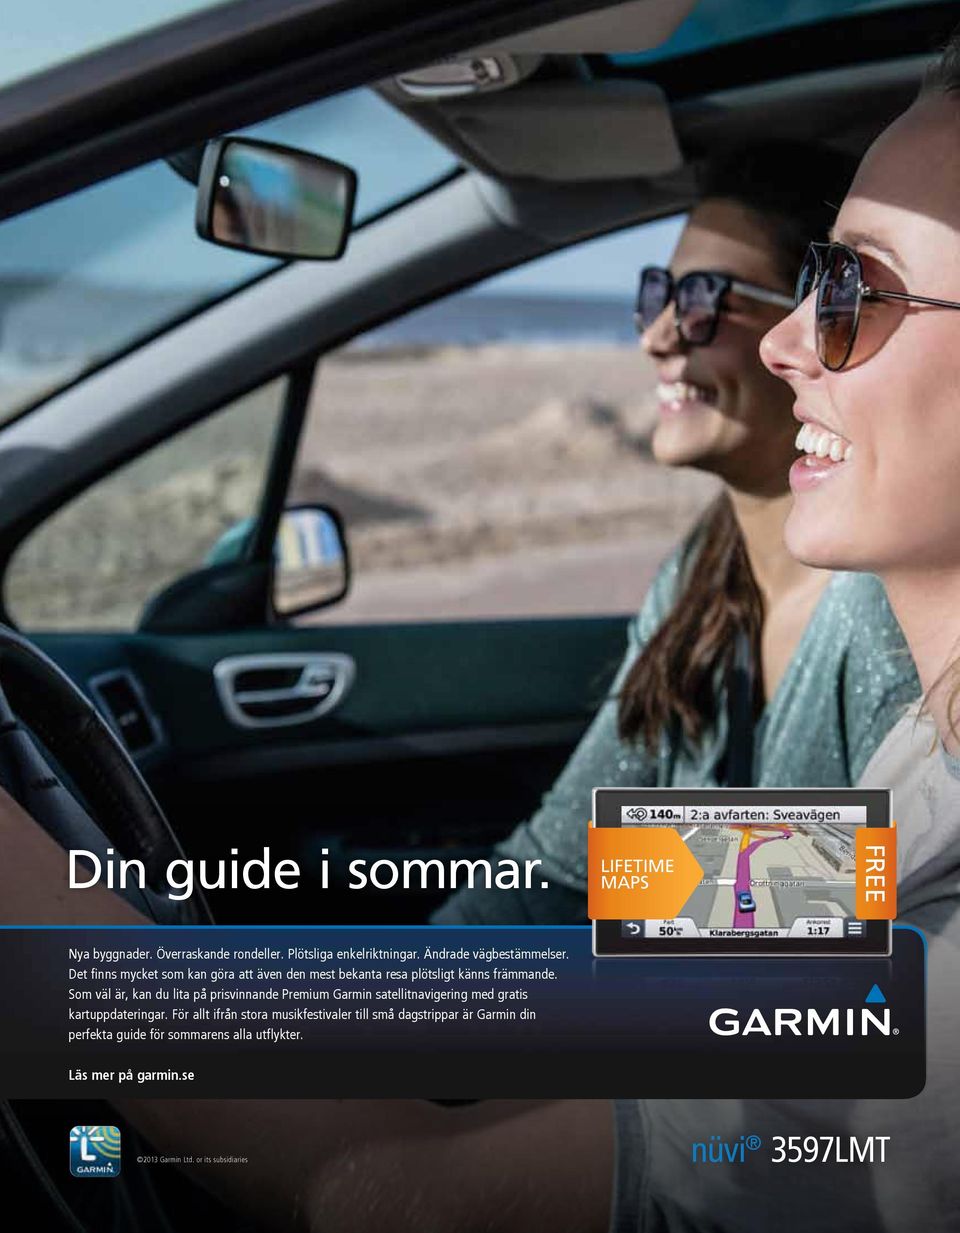 Som väl är, kan du lita på prisvinnande Premium Garmin satellitnavigering med gratis kartuppdateringar.